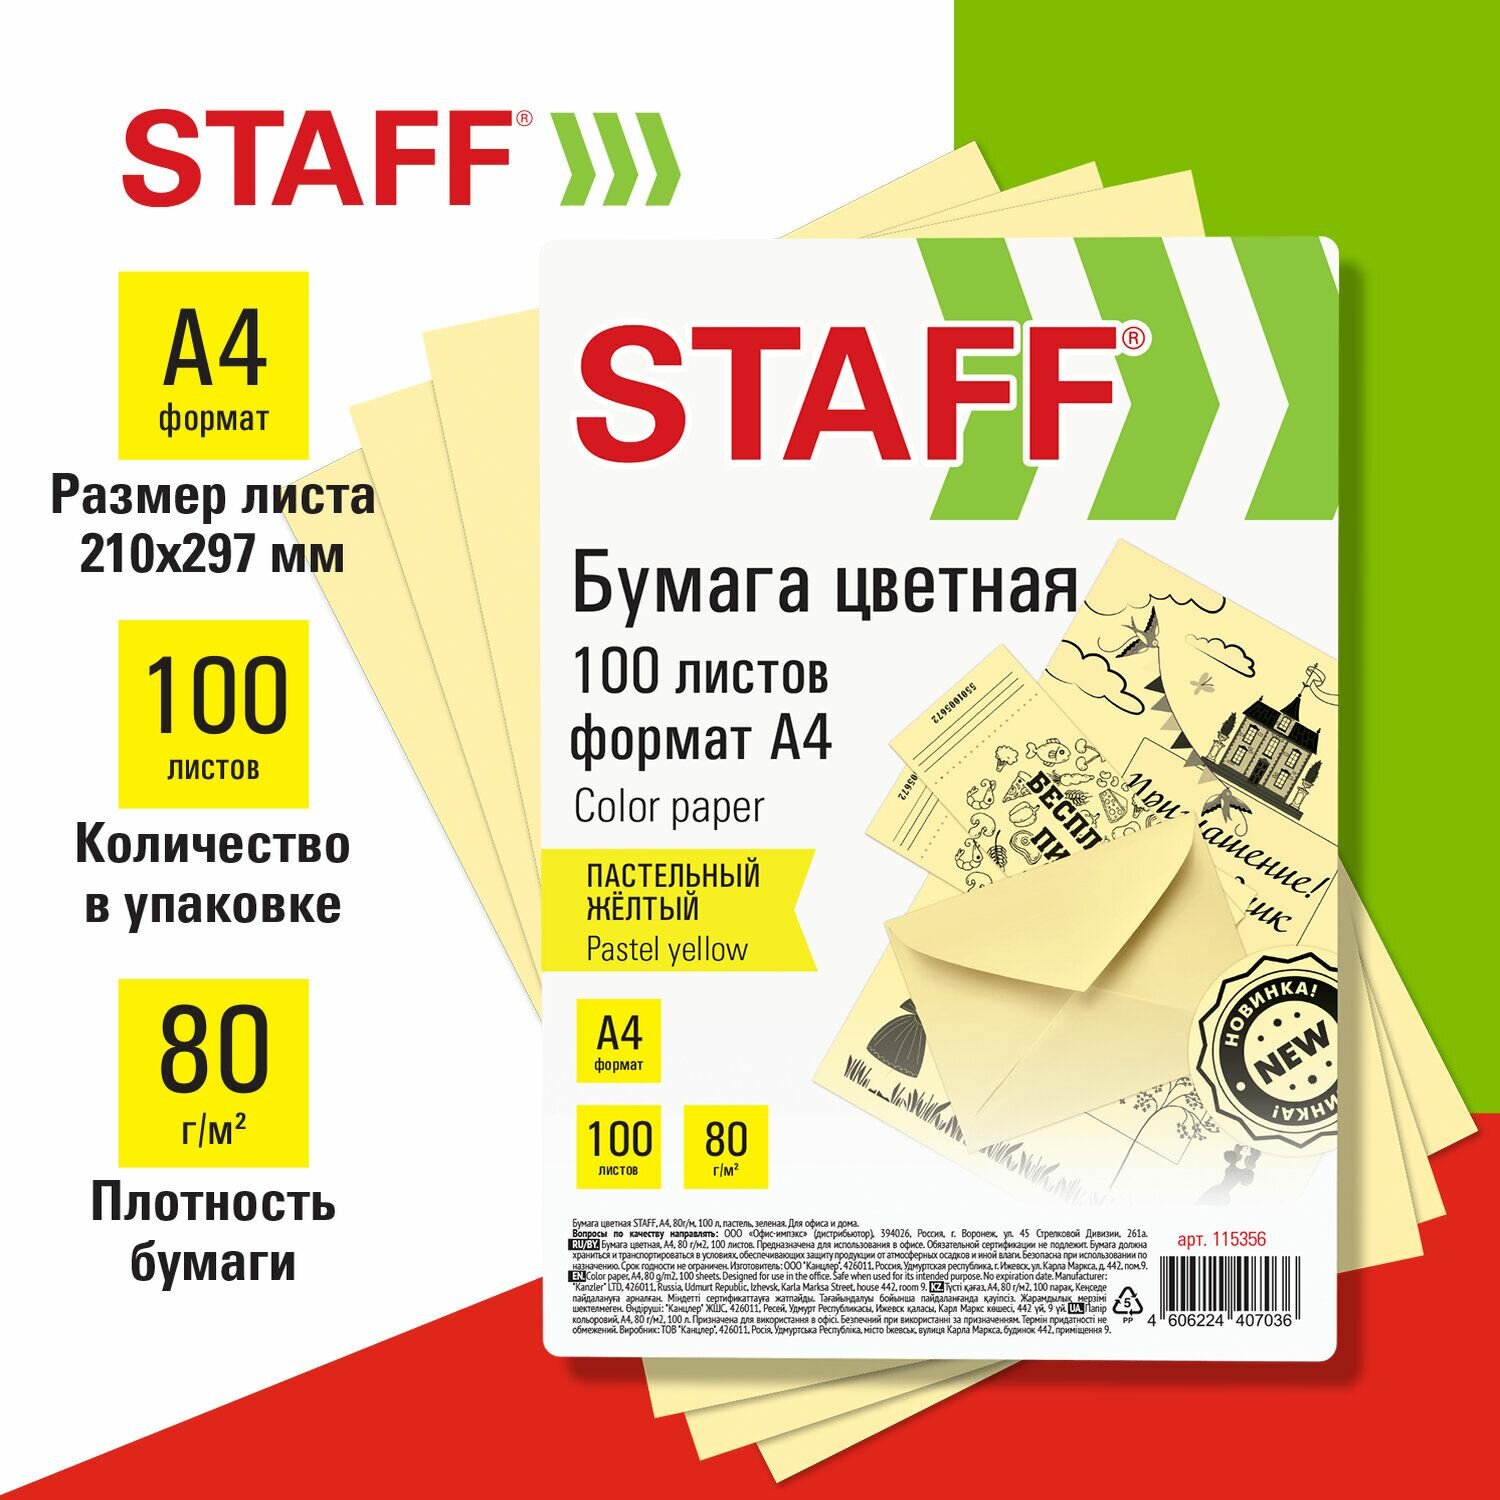 Цветная бумага Staff "Пастель", желтая, А4, 80 г/м2, 100 листов, для офиса и дома